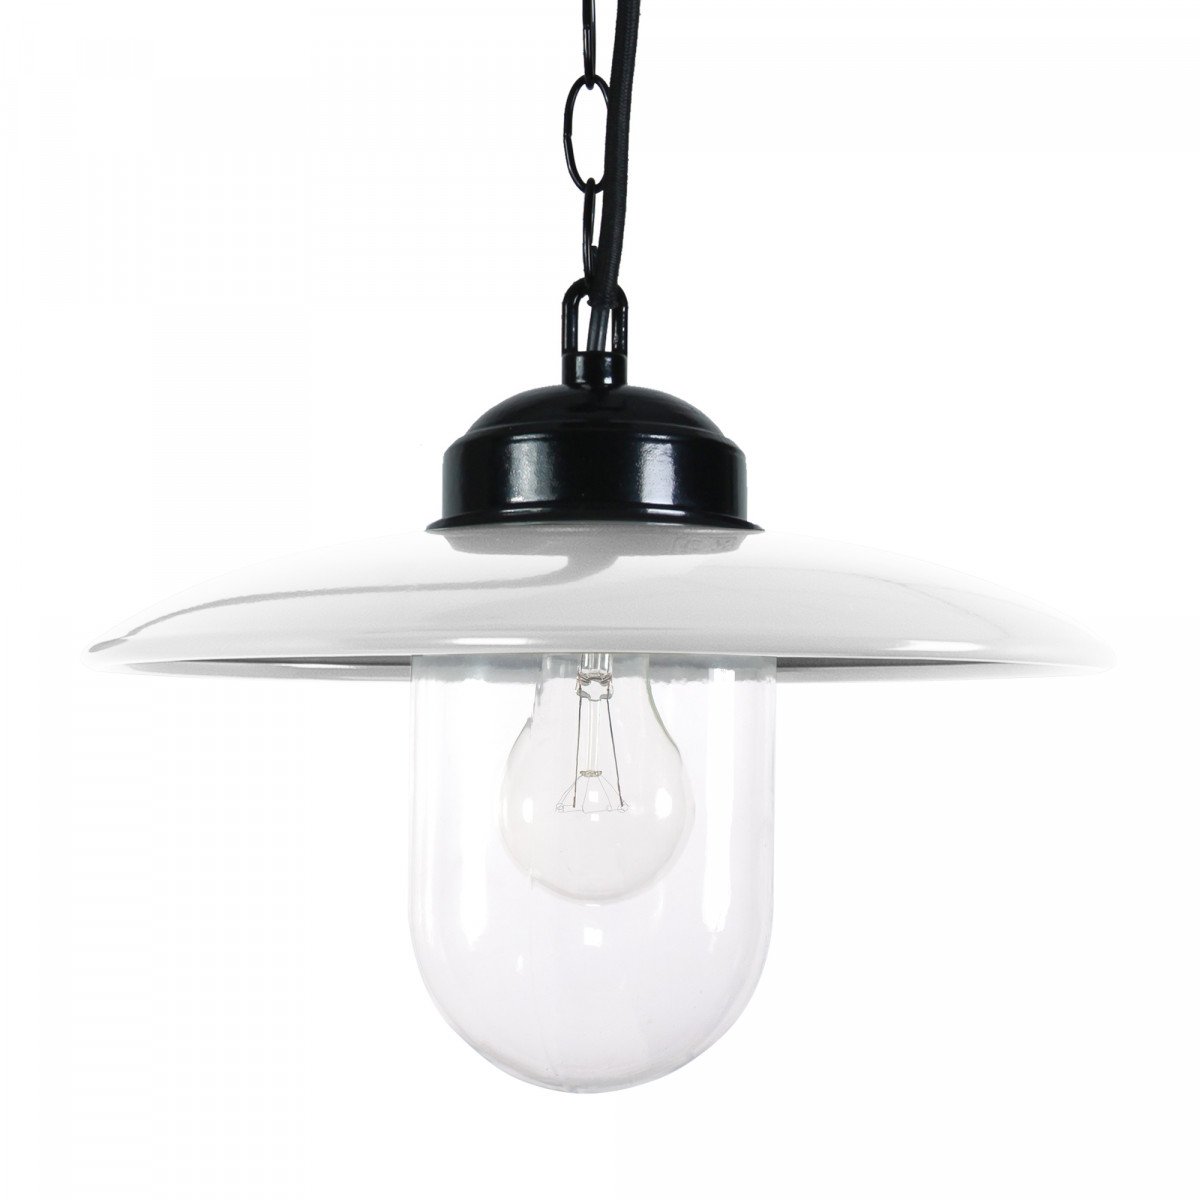 Lampe suspendue Solingen blanche (6504) | Nostalux.fr  -  Robuste et de style industriel